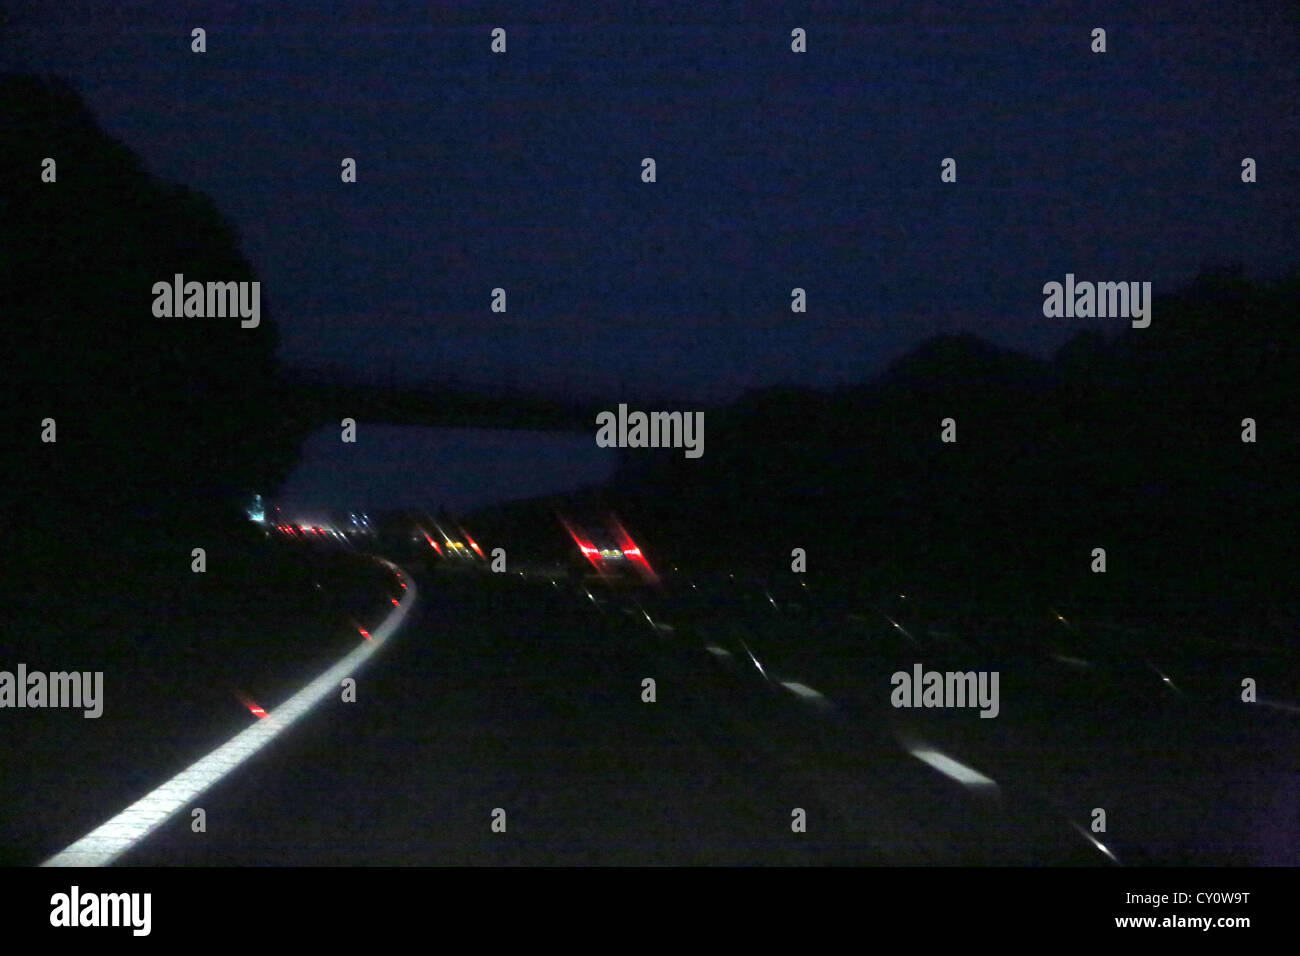 Fahren auf der Autobahn bei Regen in der Nacht durch Auto Windschutzscheibe England genommen Stockfoto